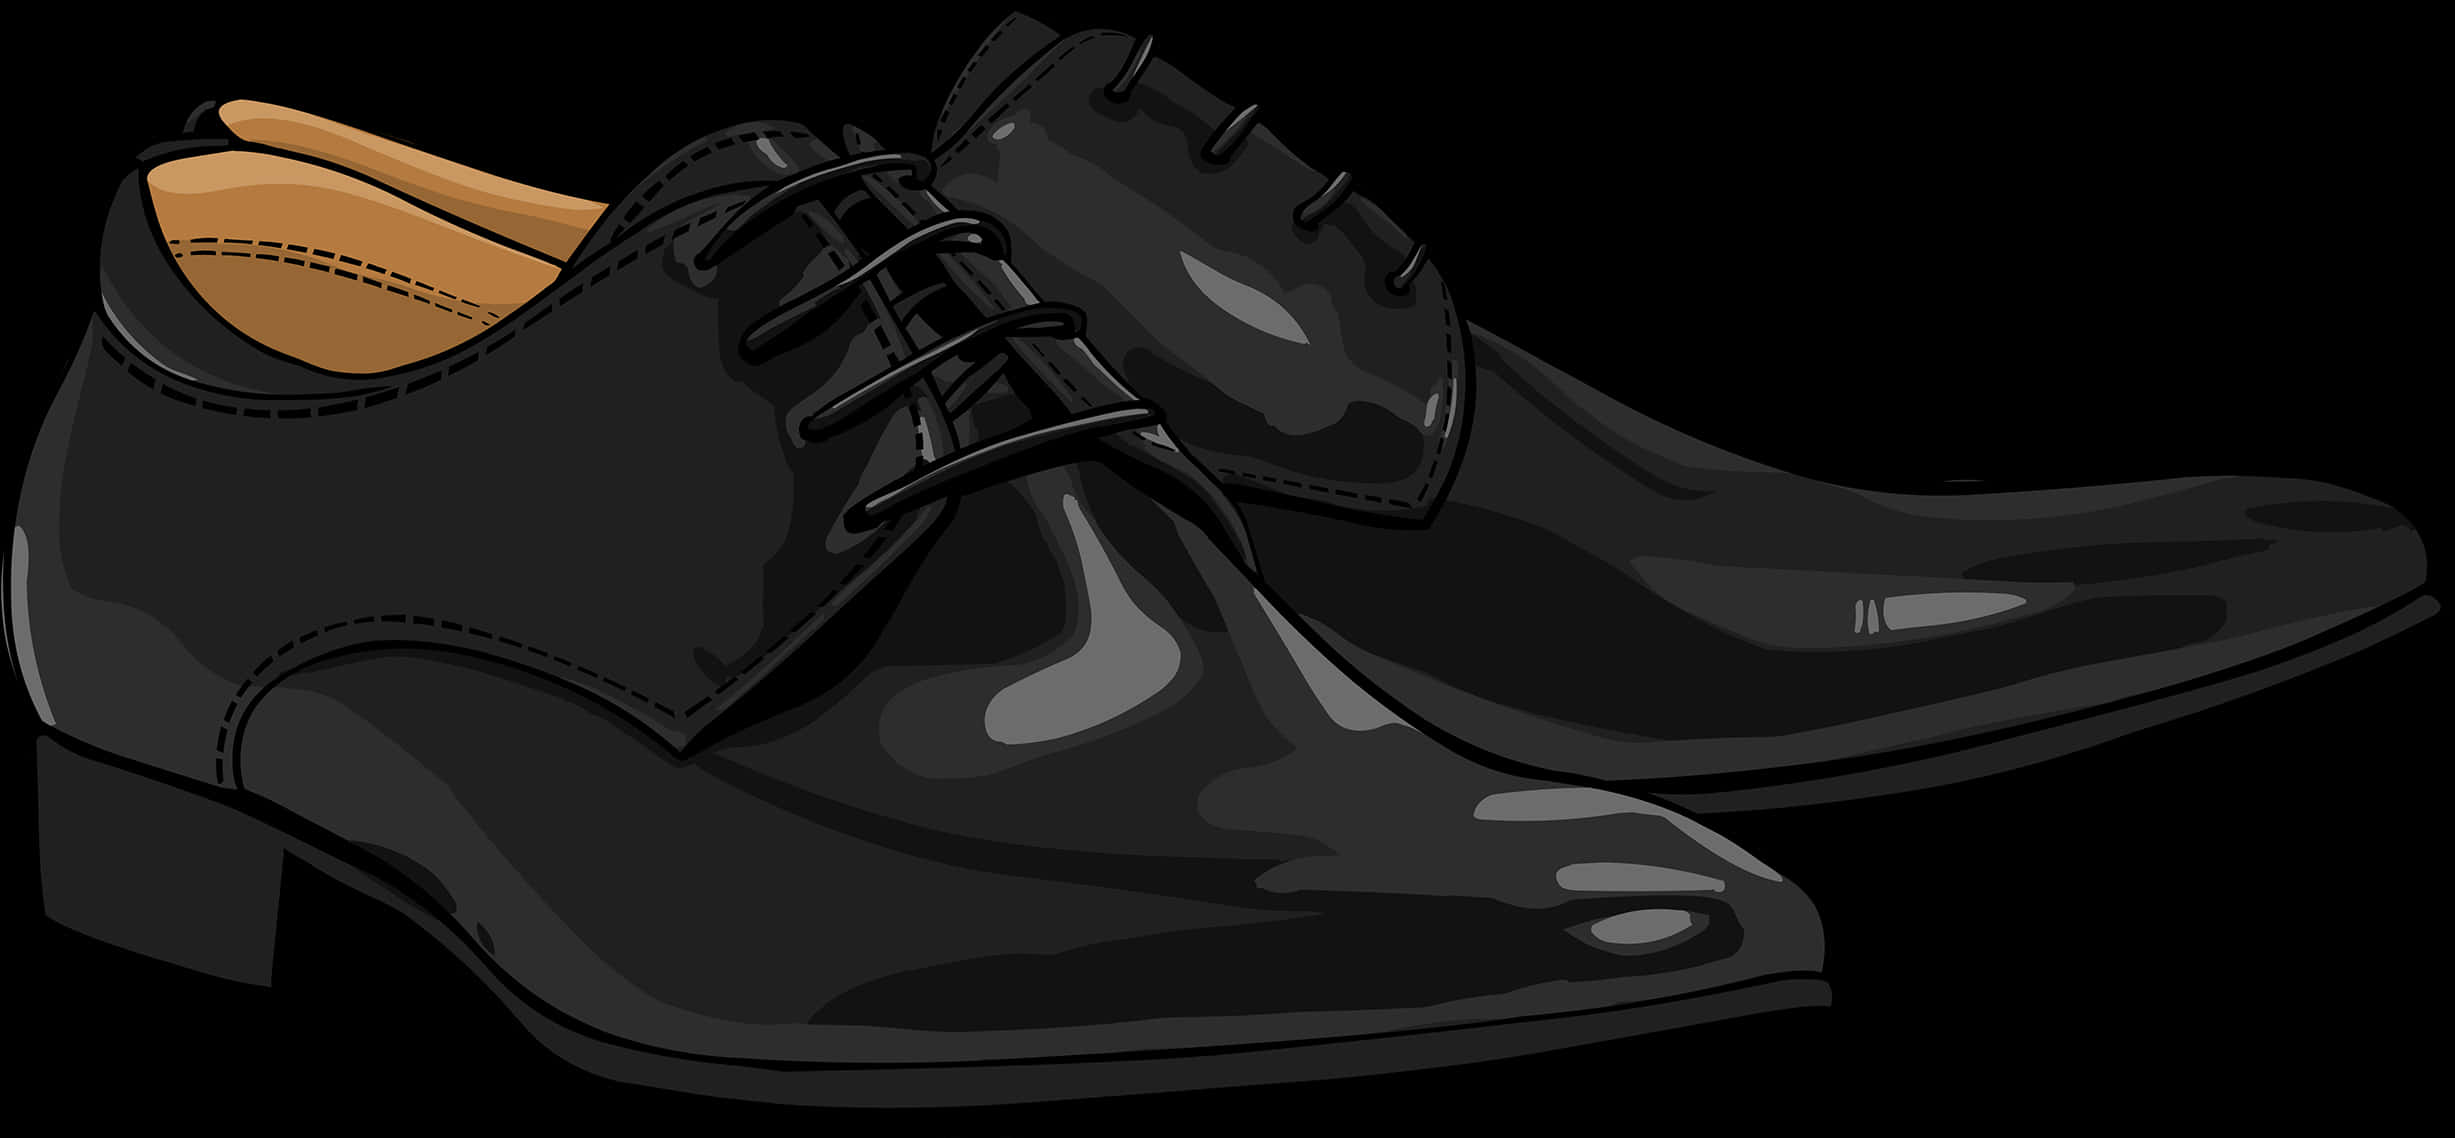 Black Dress Shoes Illustration PNG